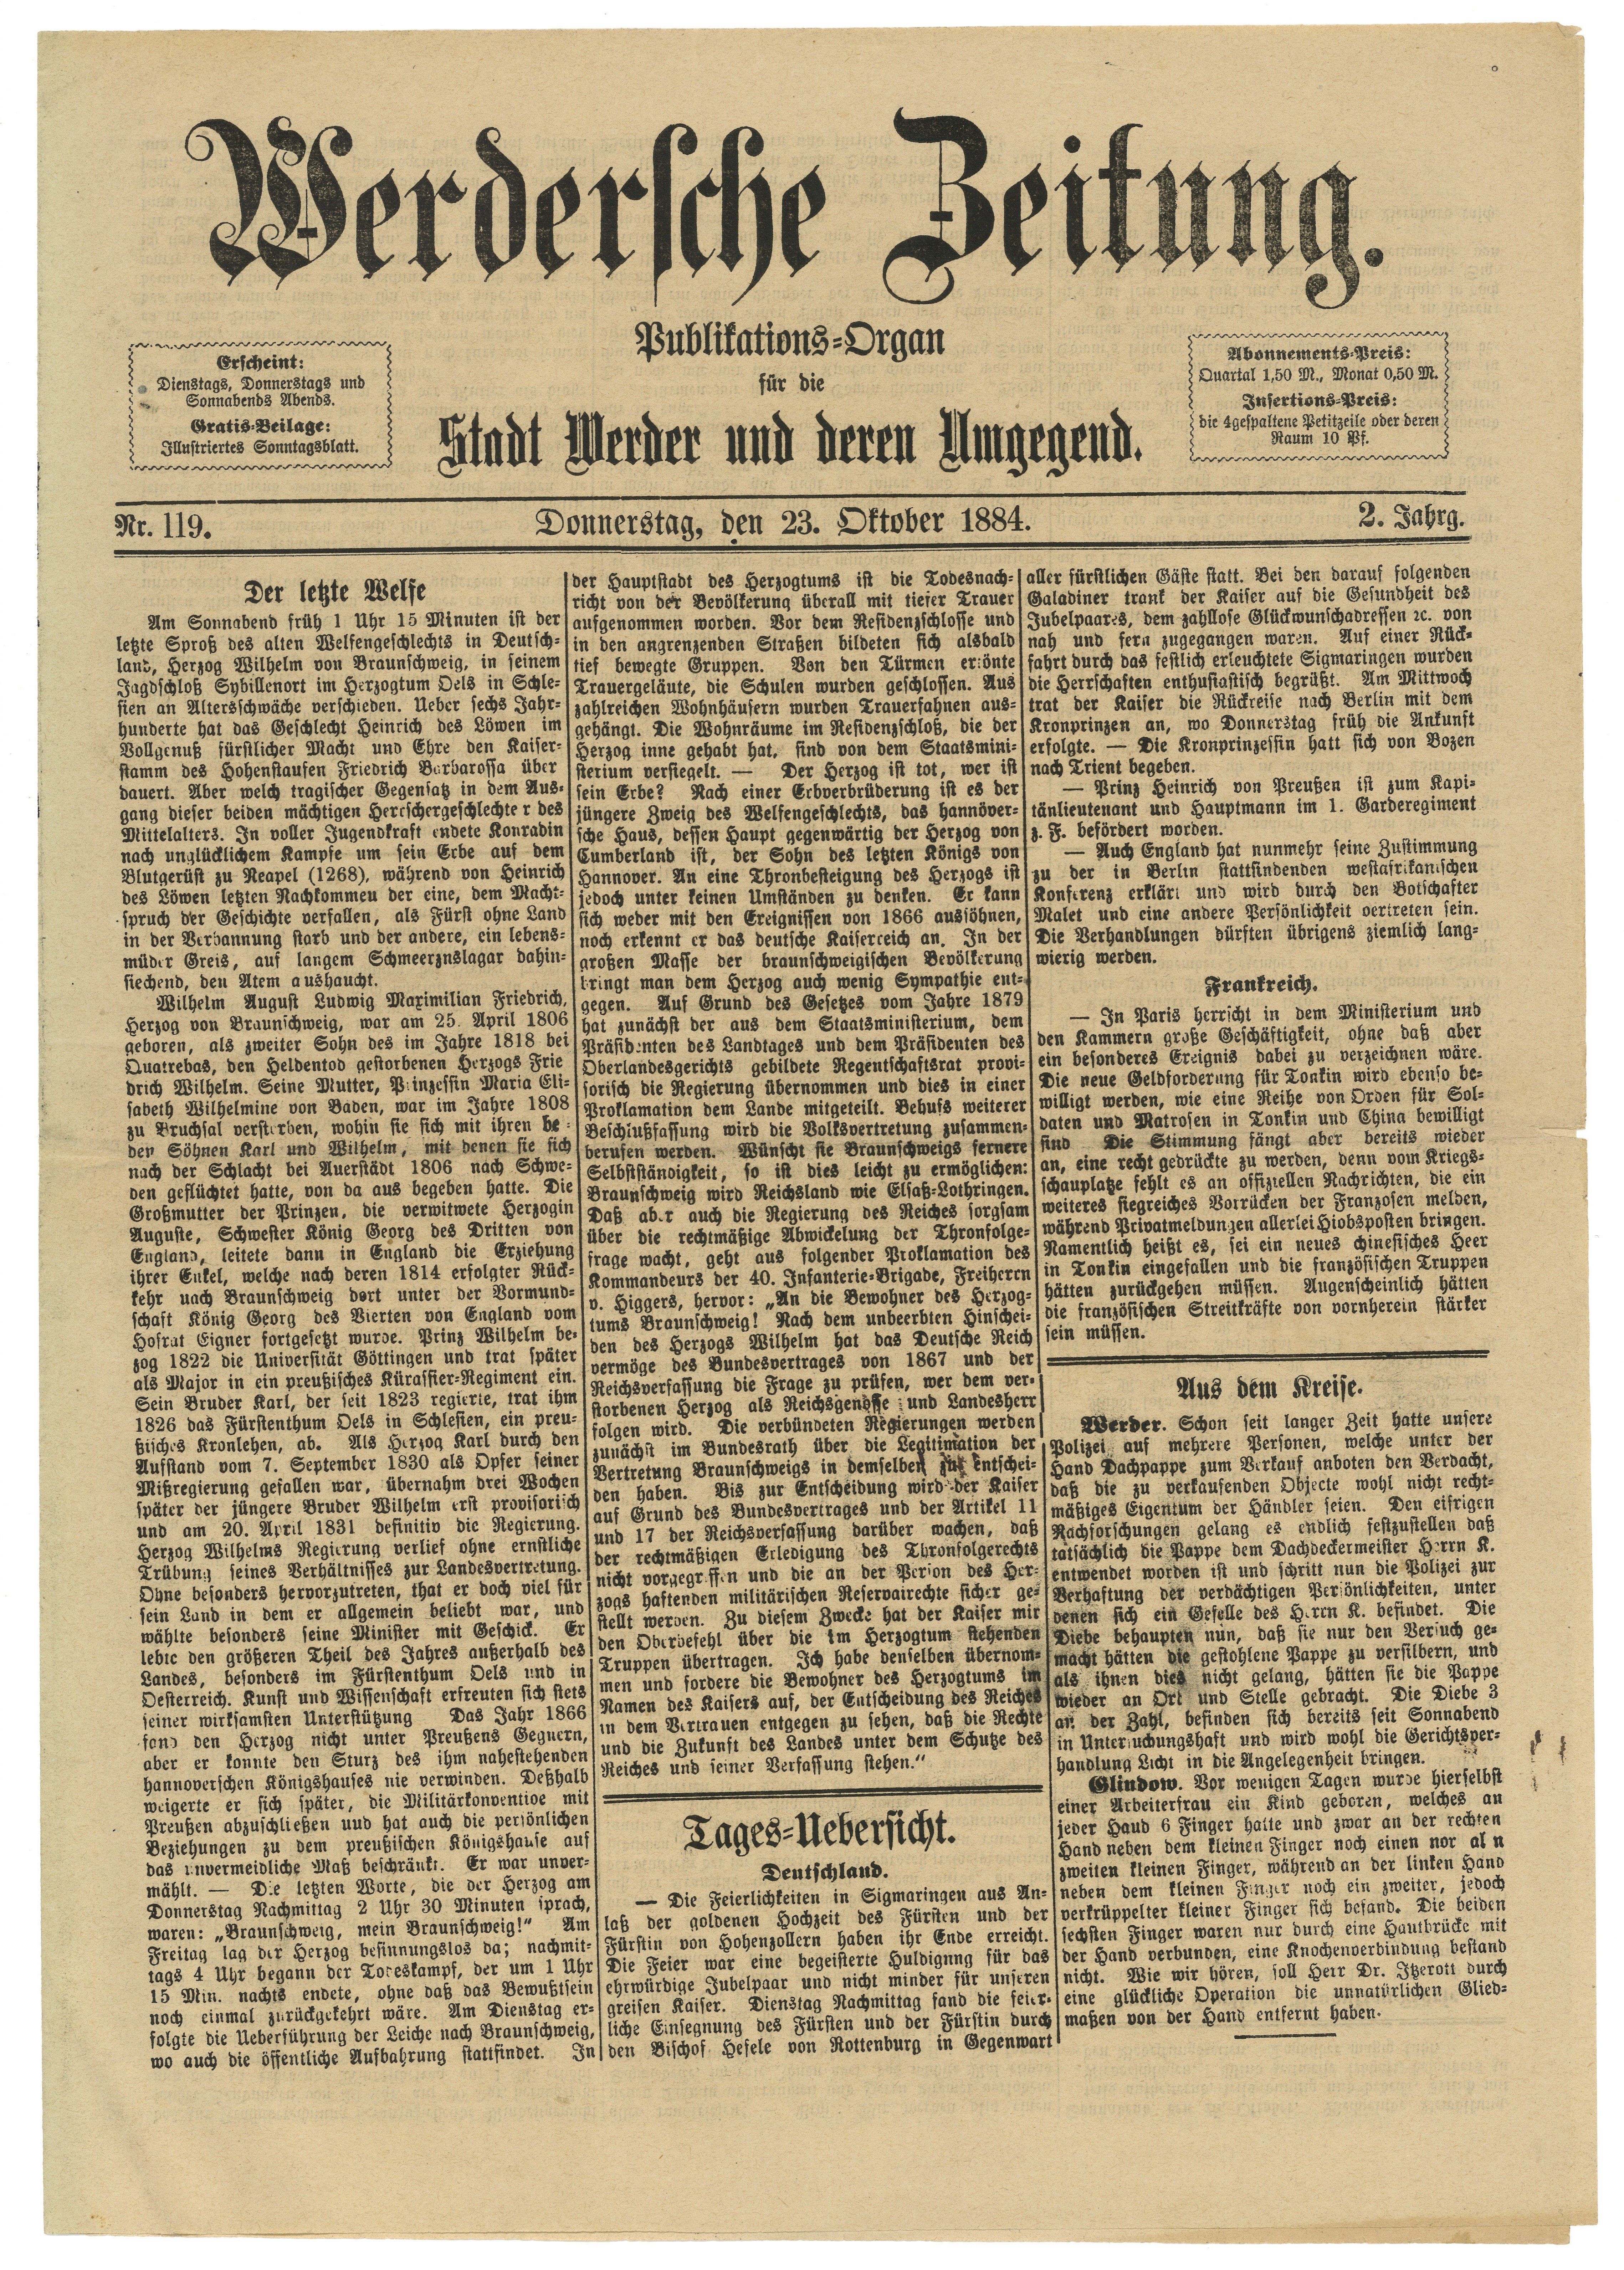 Werdersche Zeitung, Jg. 2, Nr. 119, 23. Oktober 1884 (Landesgeschichtliche Vereinigung für die Mark Brandenburg e.V., Archiv CC BY)